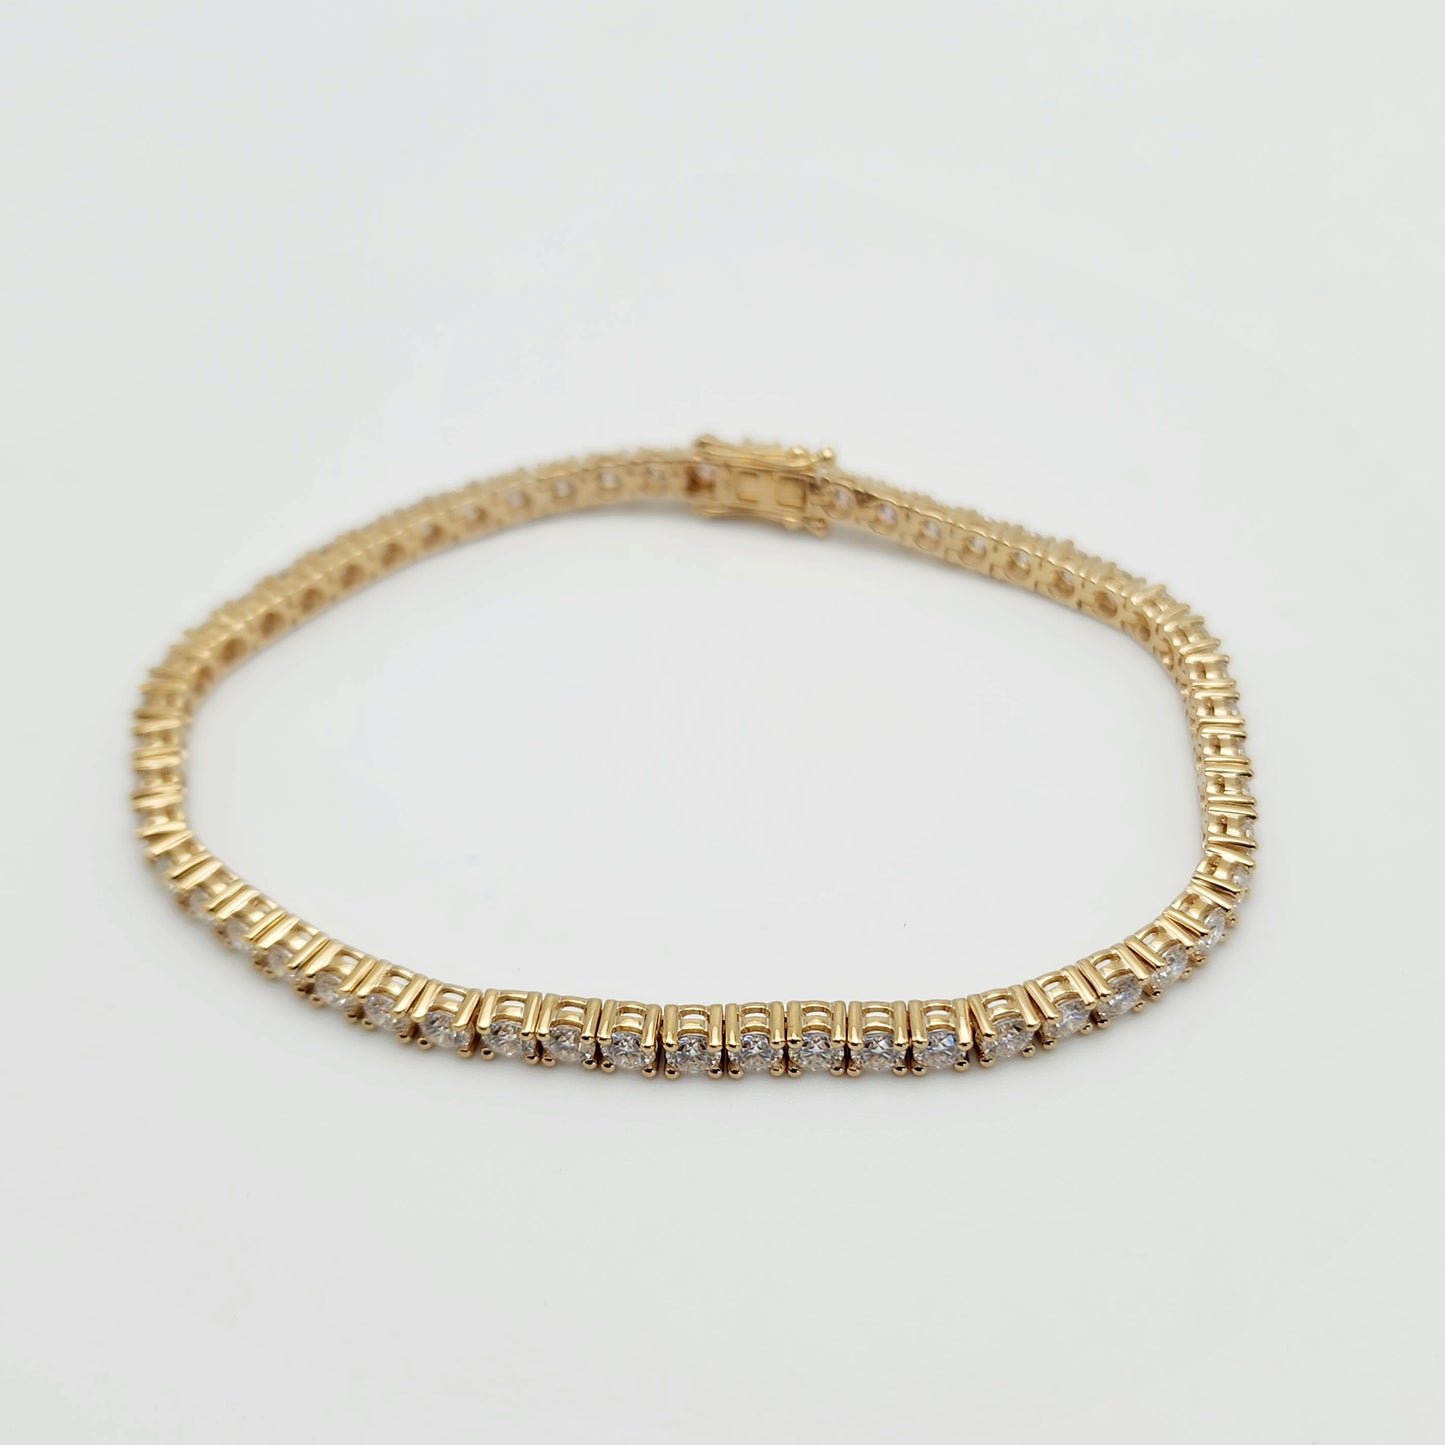 14k Yellow Gold Moissanite Tennis Bracelet